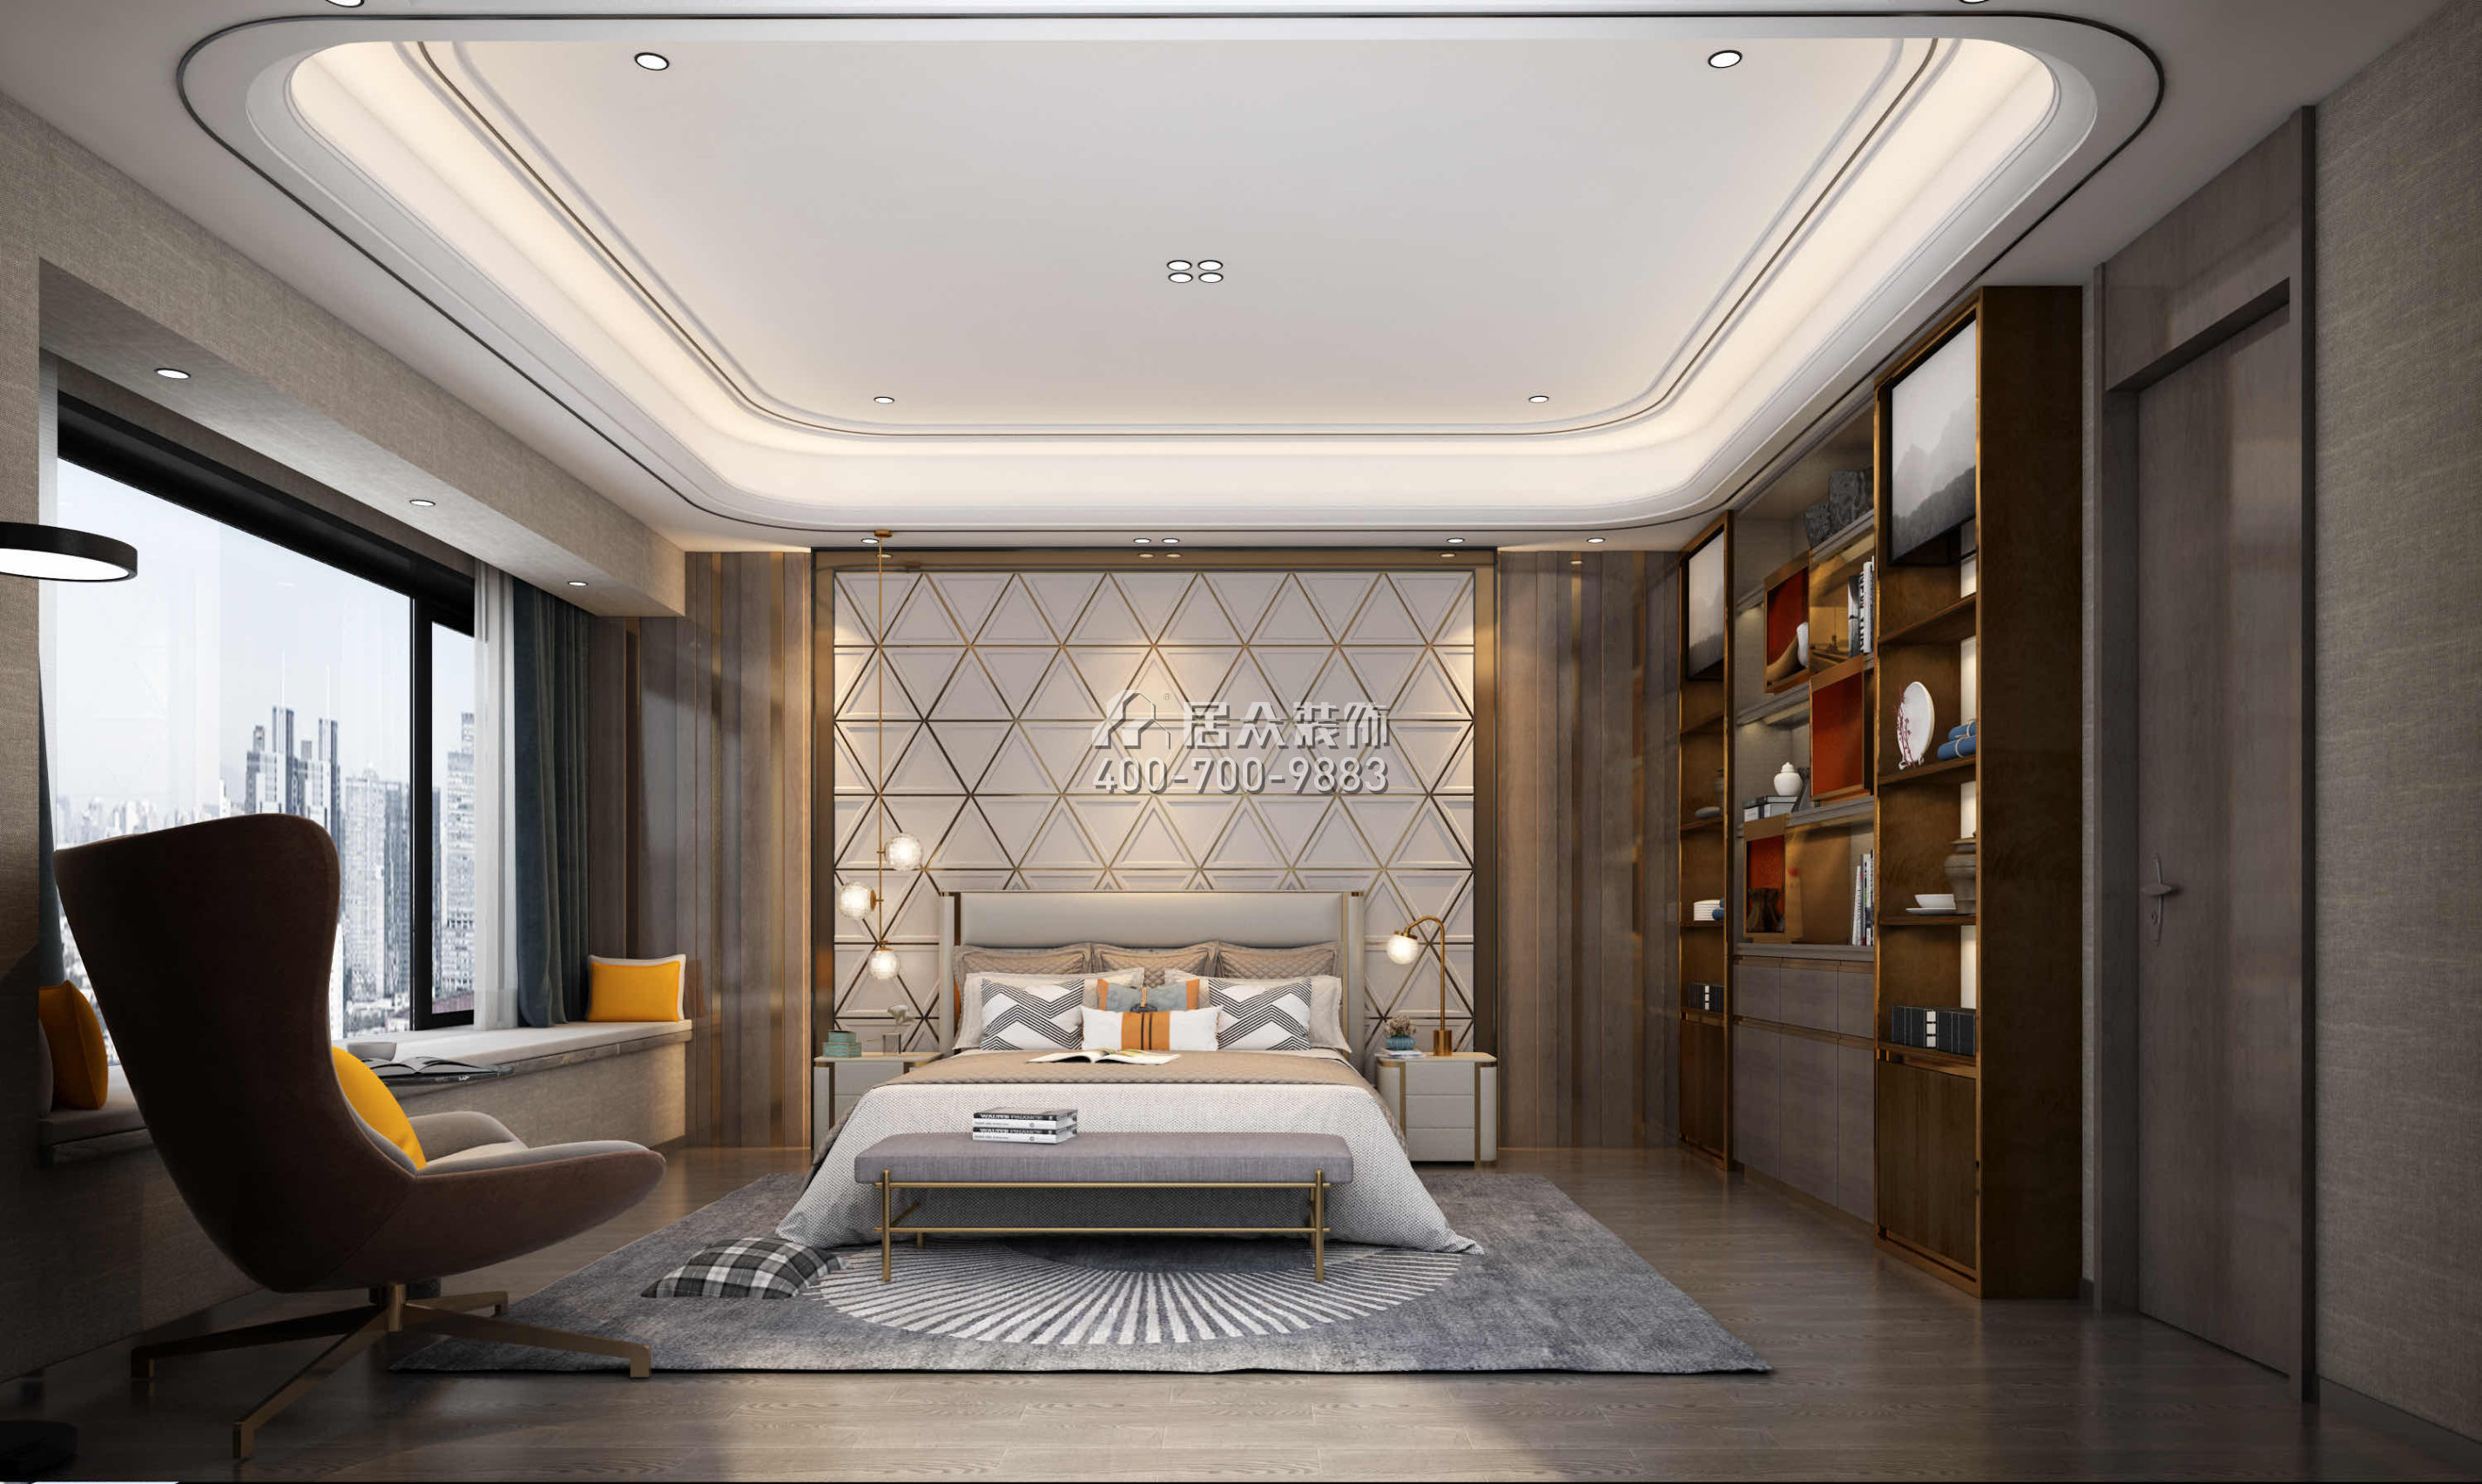 新天鵝堡289平方米現代簡約風格平層戶型臥室裝修效果圖